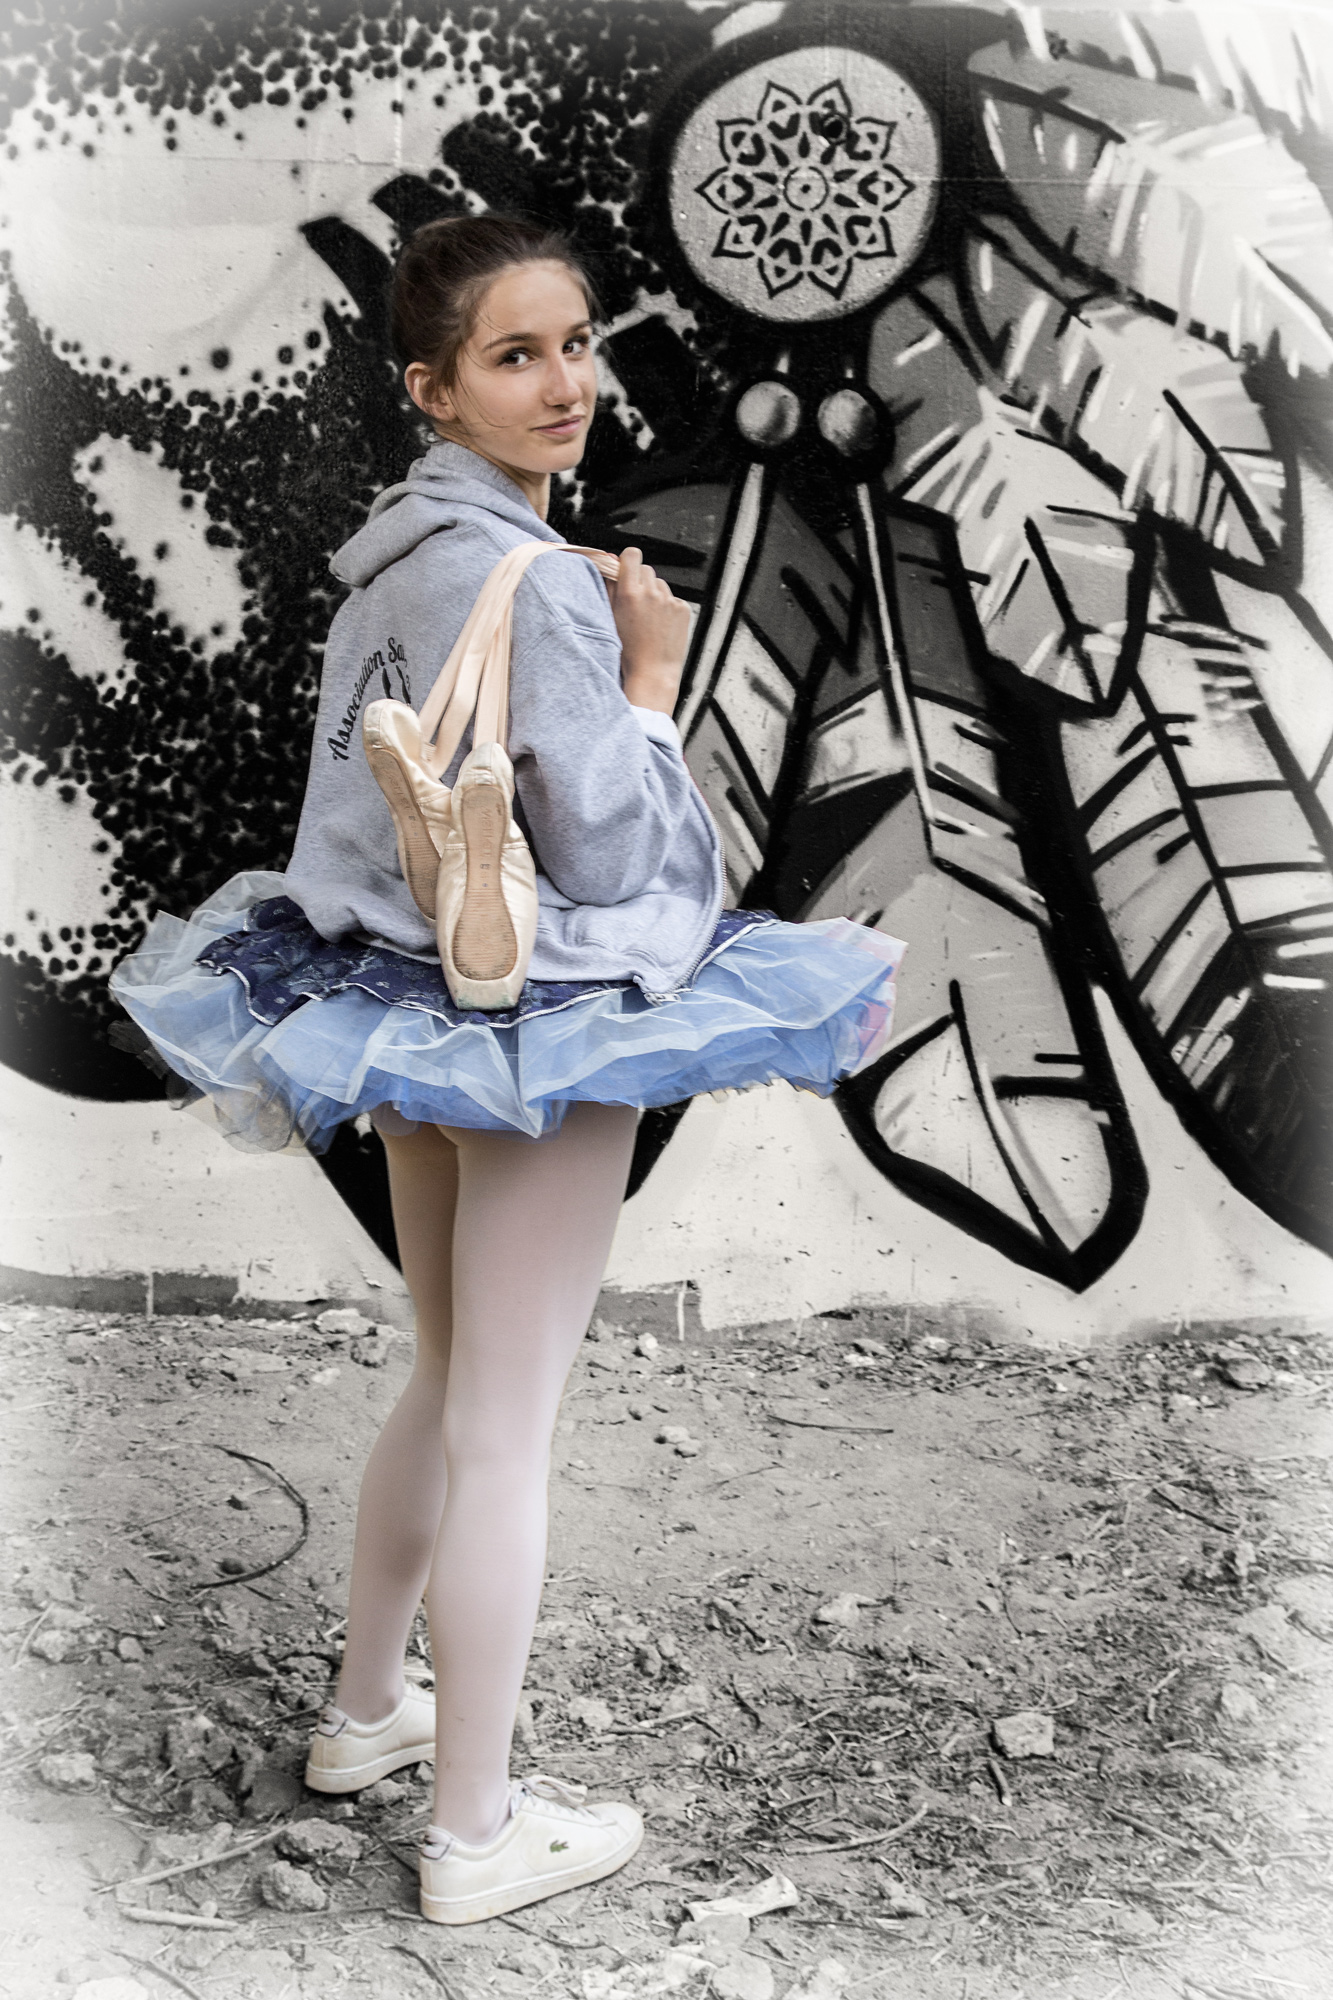 Street ballerina